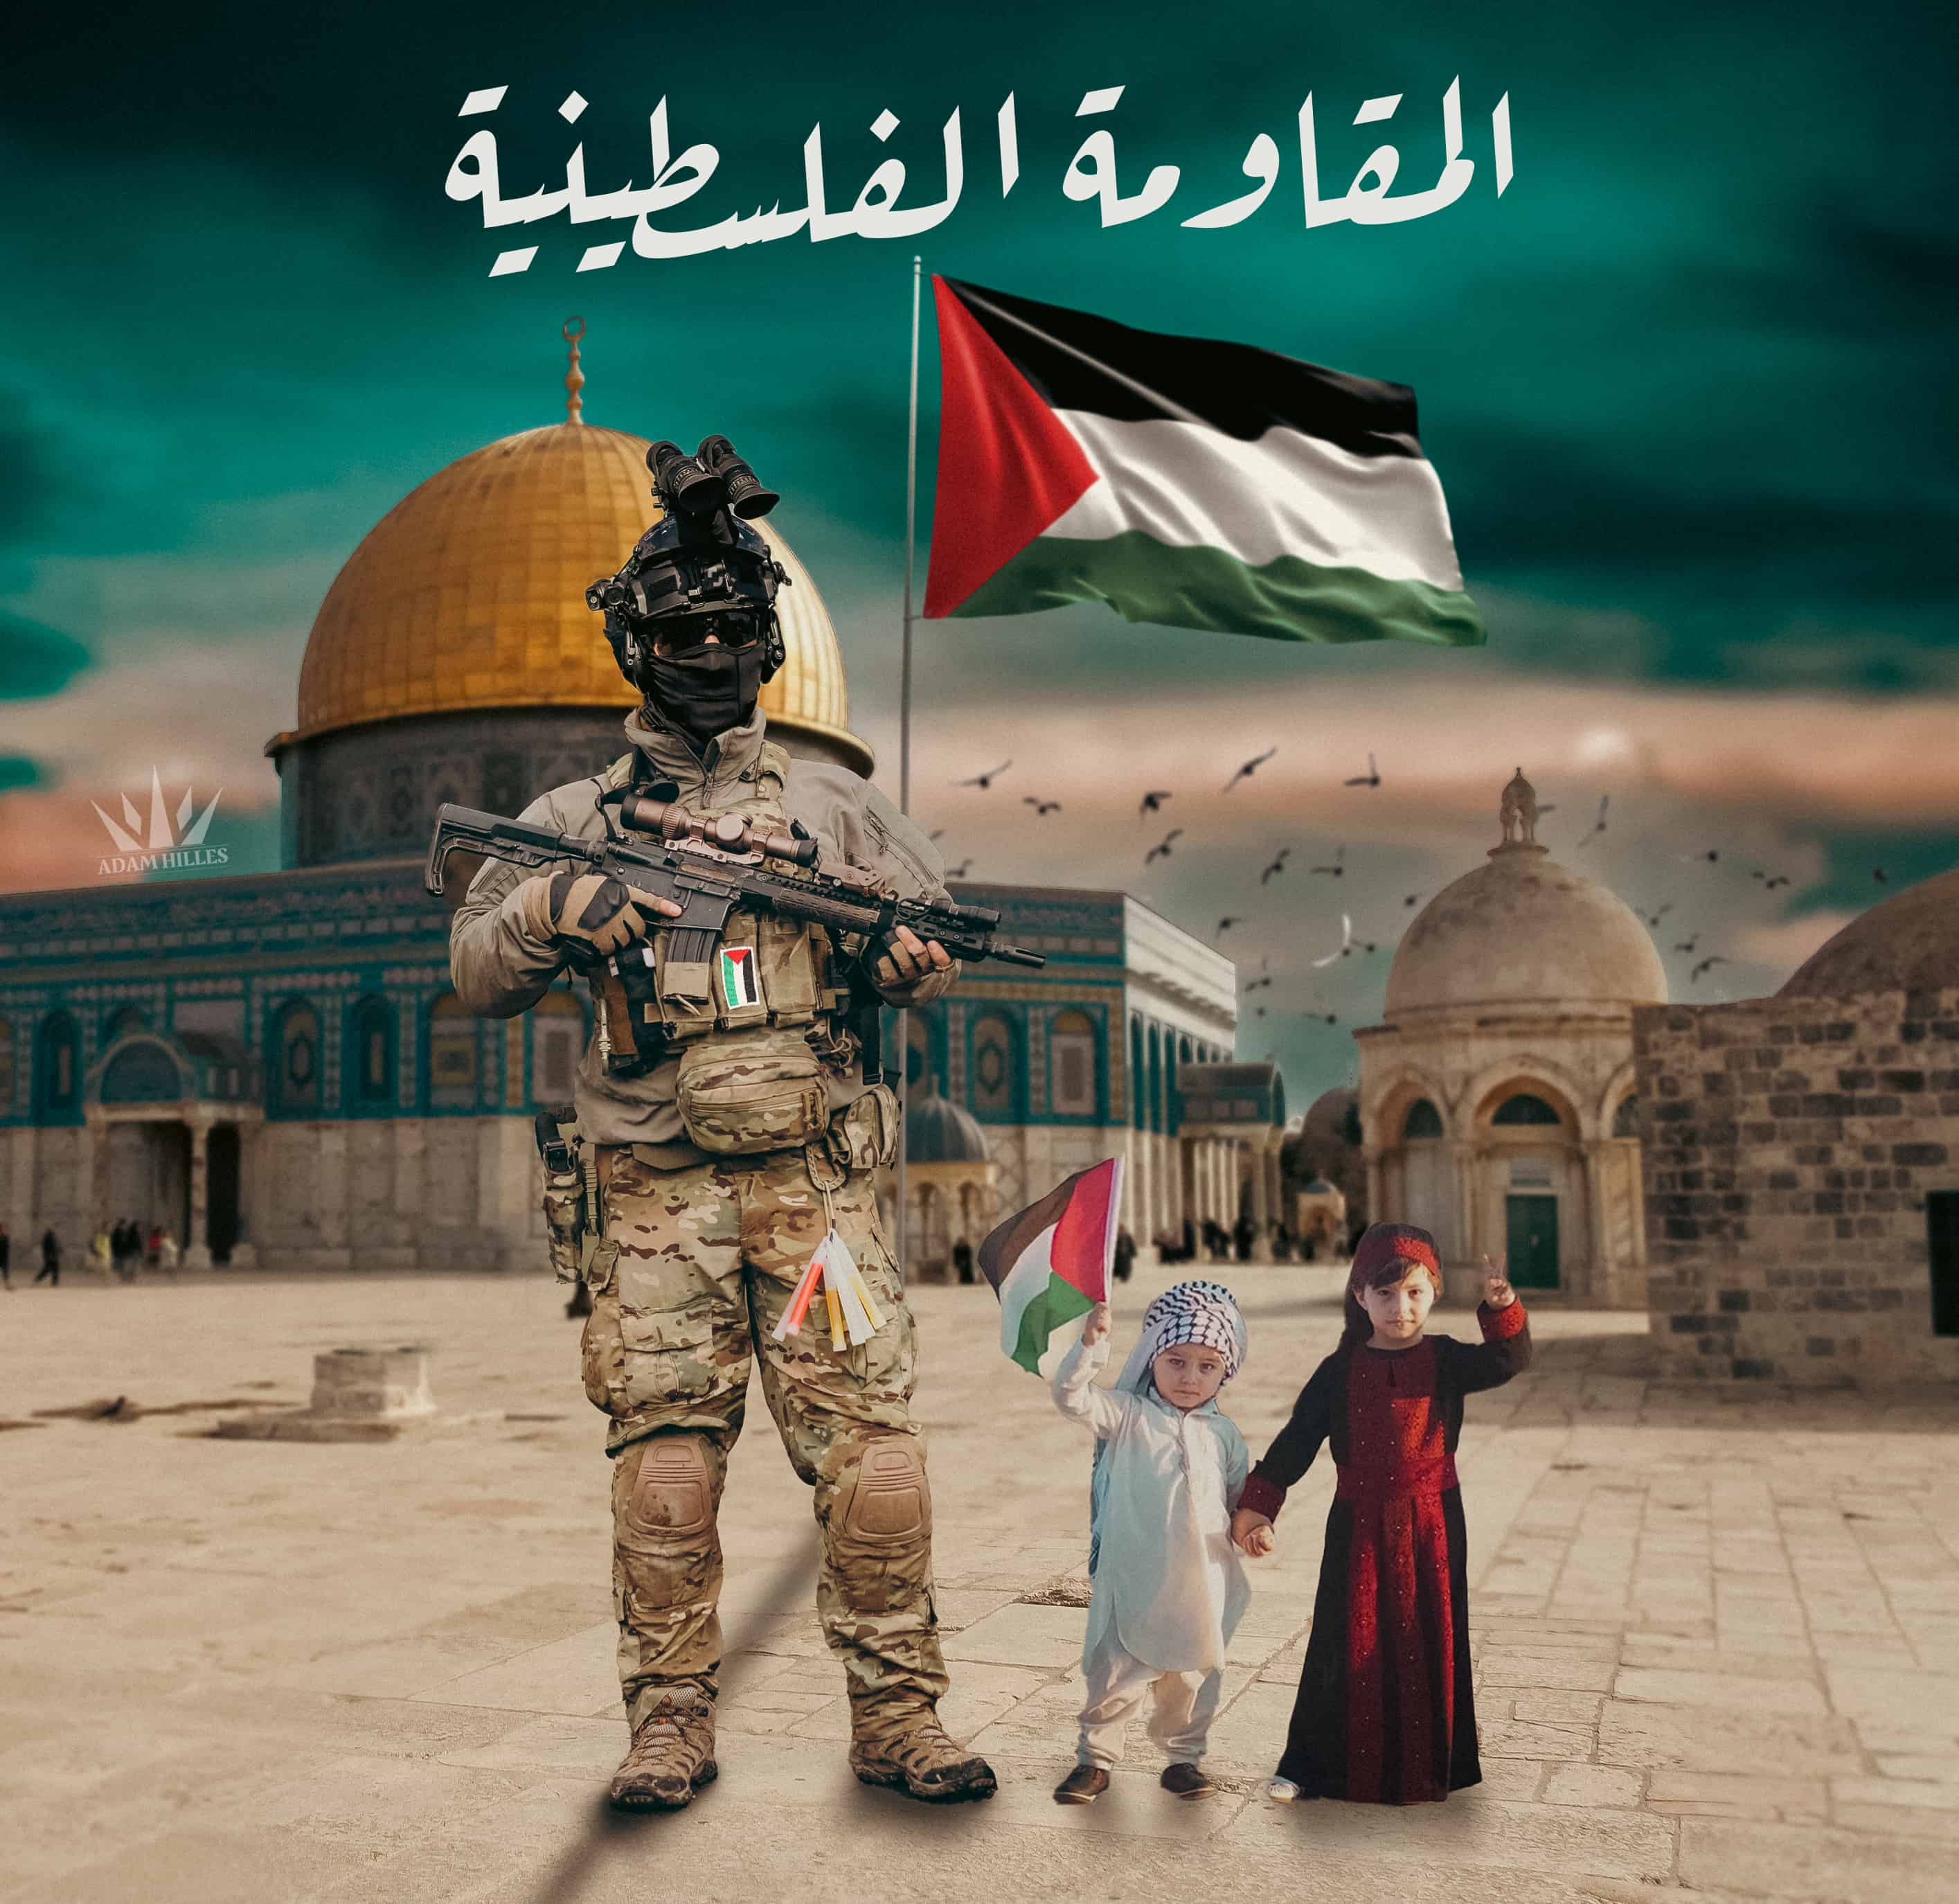 المقاومة الفلسطينية ممثل الشعب الفلسطيني الوحيد حماة الوطن